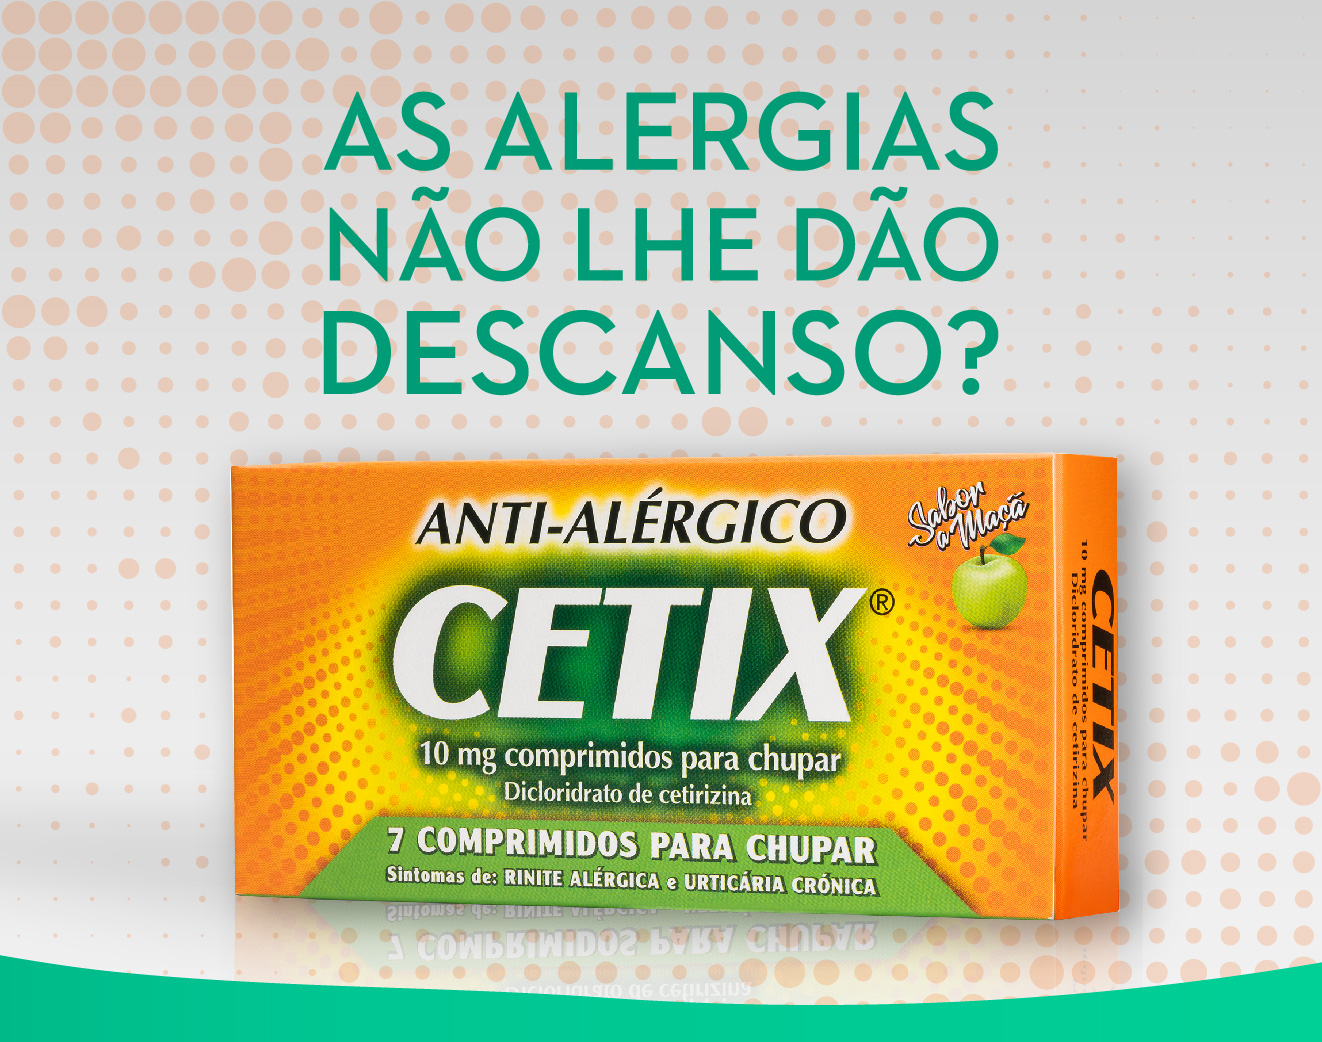 Livra-se das alergias com Cetix.